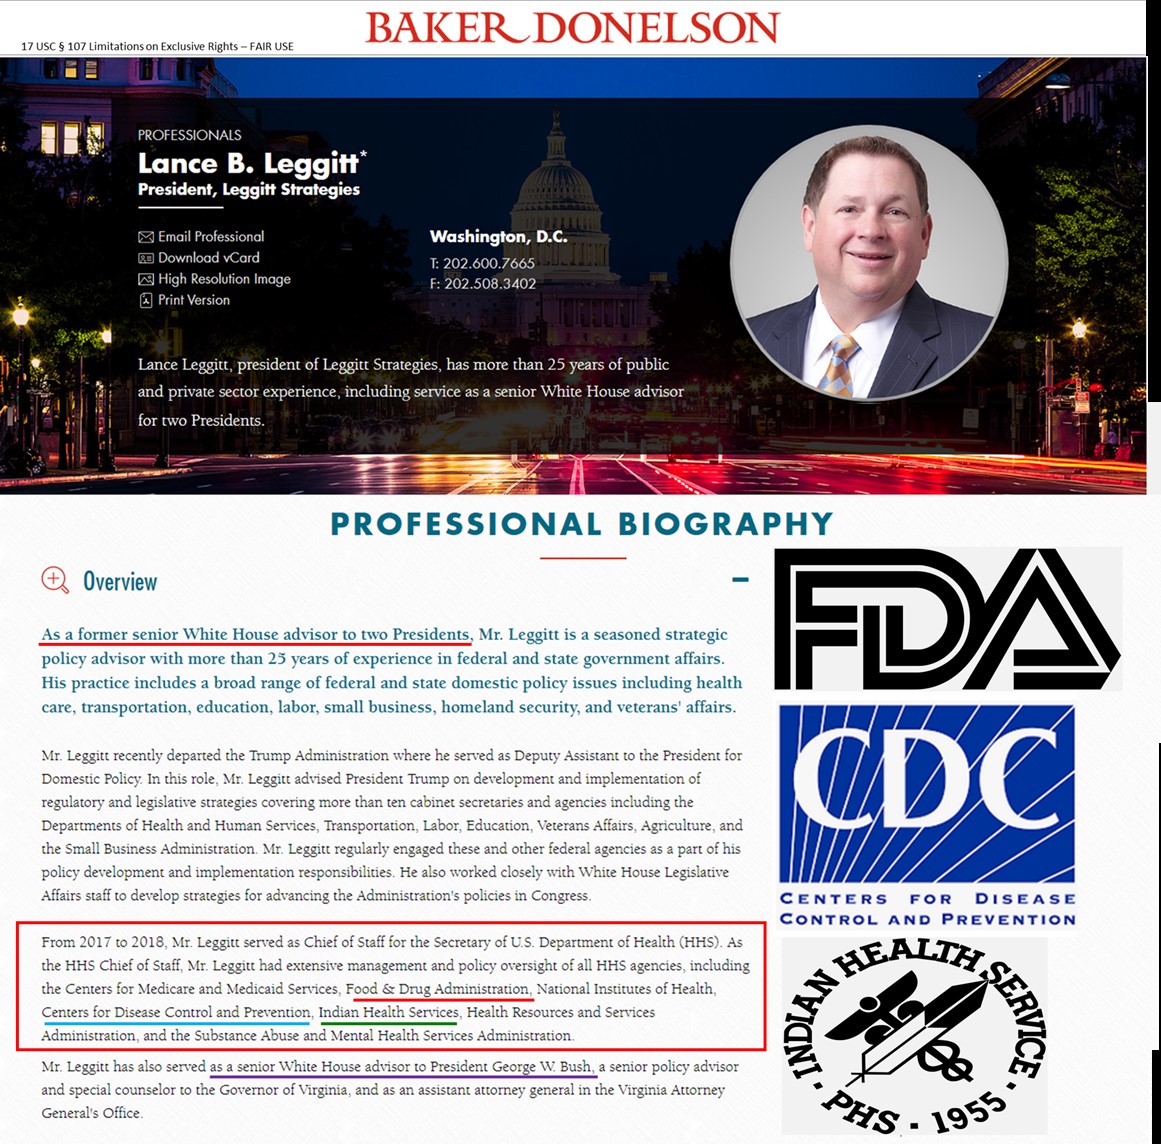 Baker Donelson Lance Leggitt FDA CDC